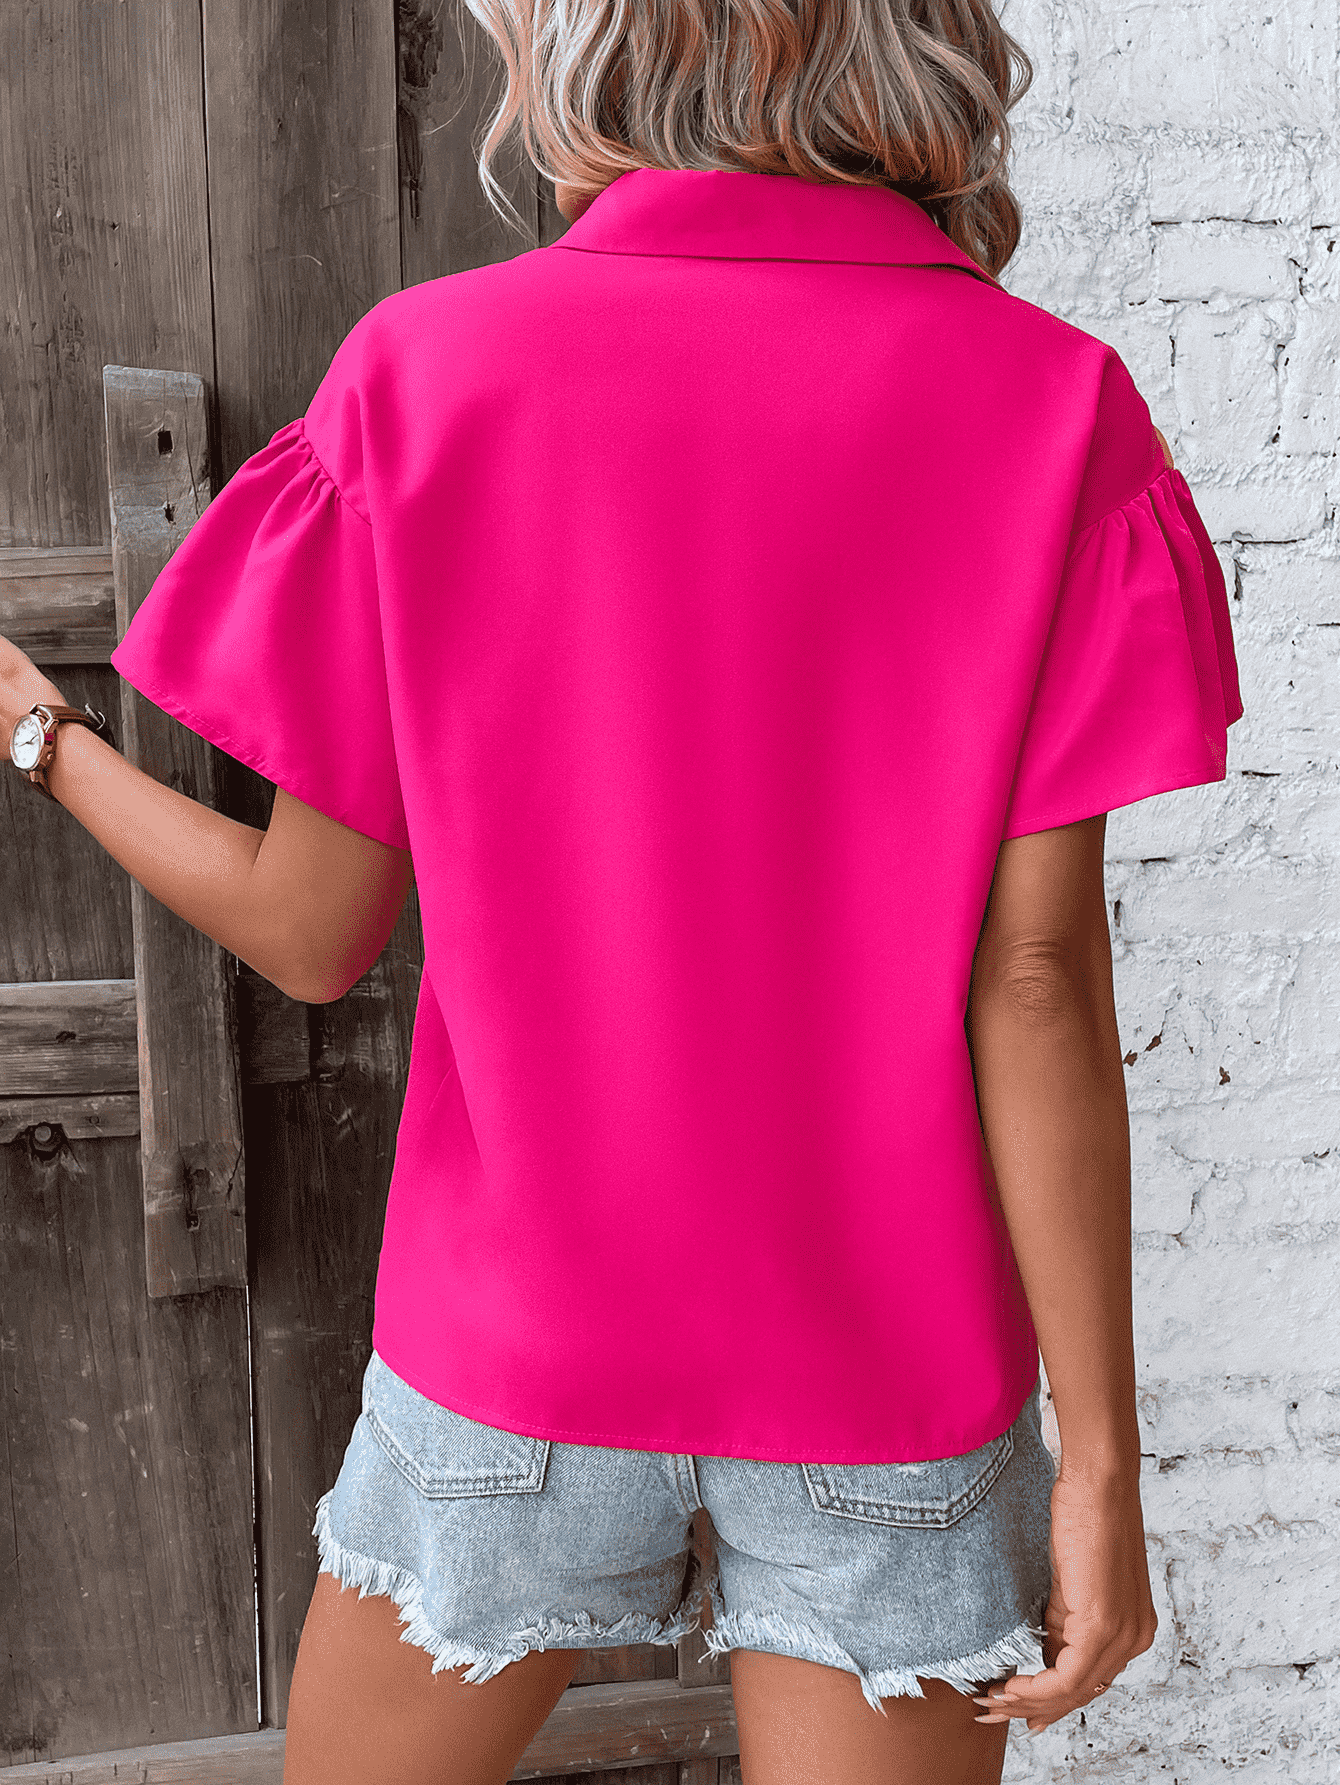 Contrast Short Sleeve Shirt - Closet of Ren